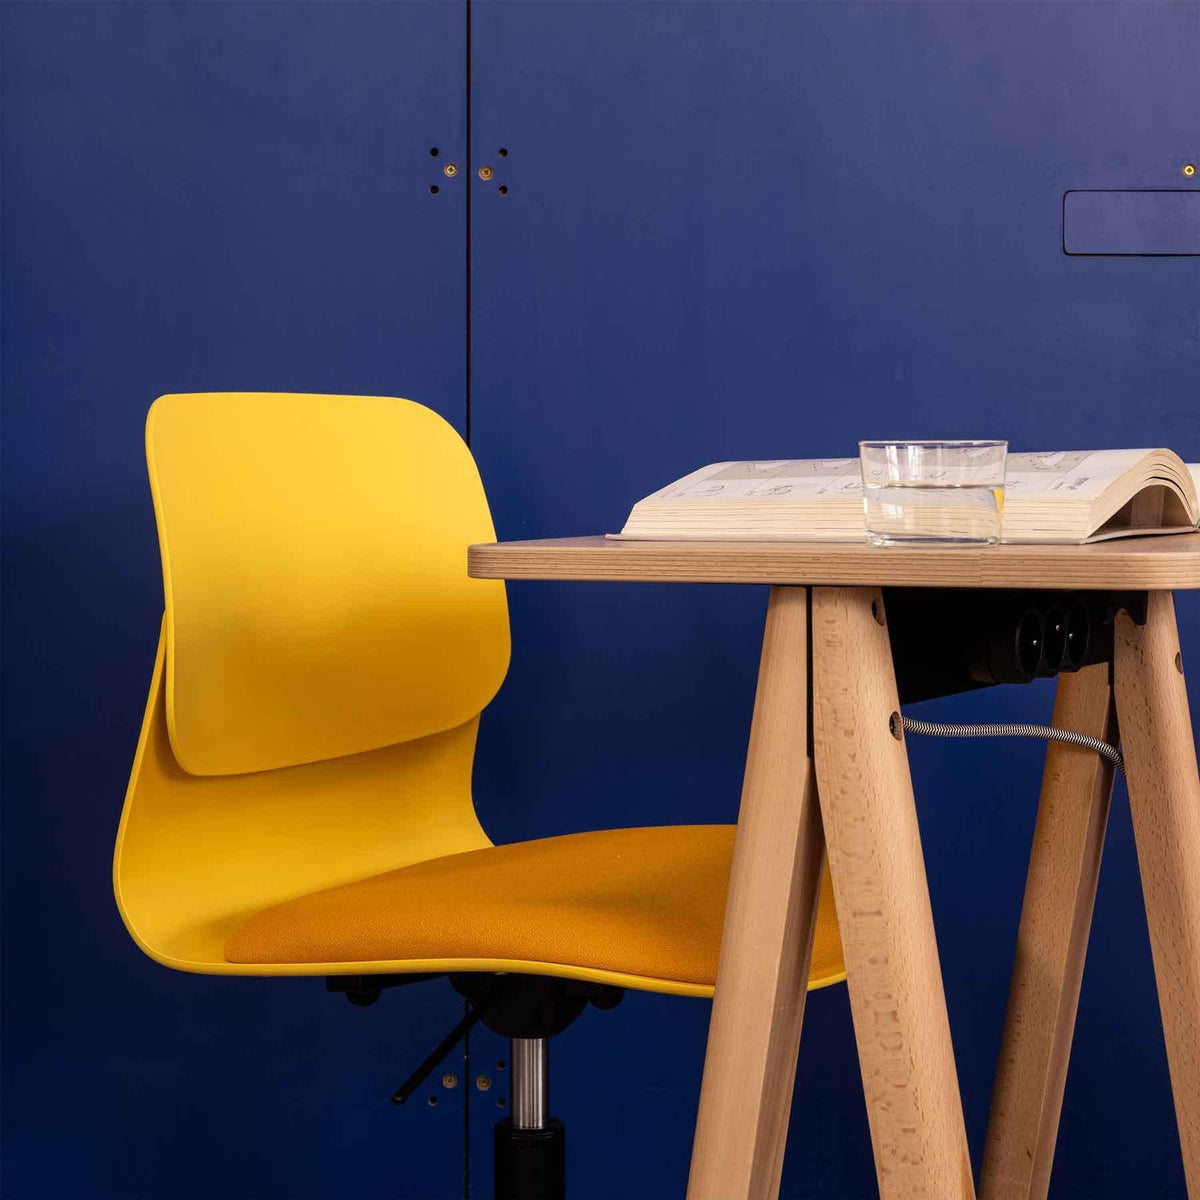 Chaise Chaise Design par Slean, vous est proposé par 37+ Design, le premier site dédié au Home Office et au télétravail en Europe